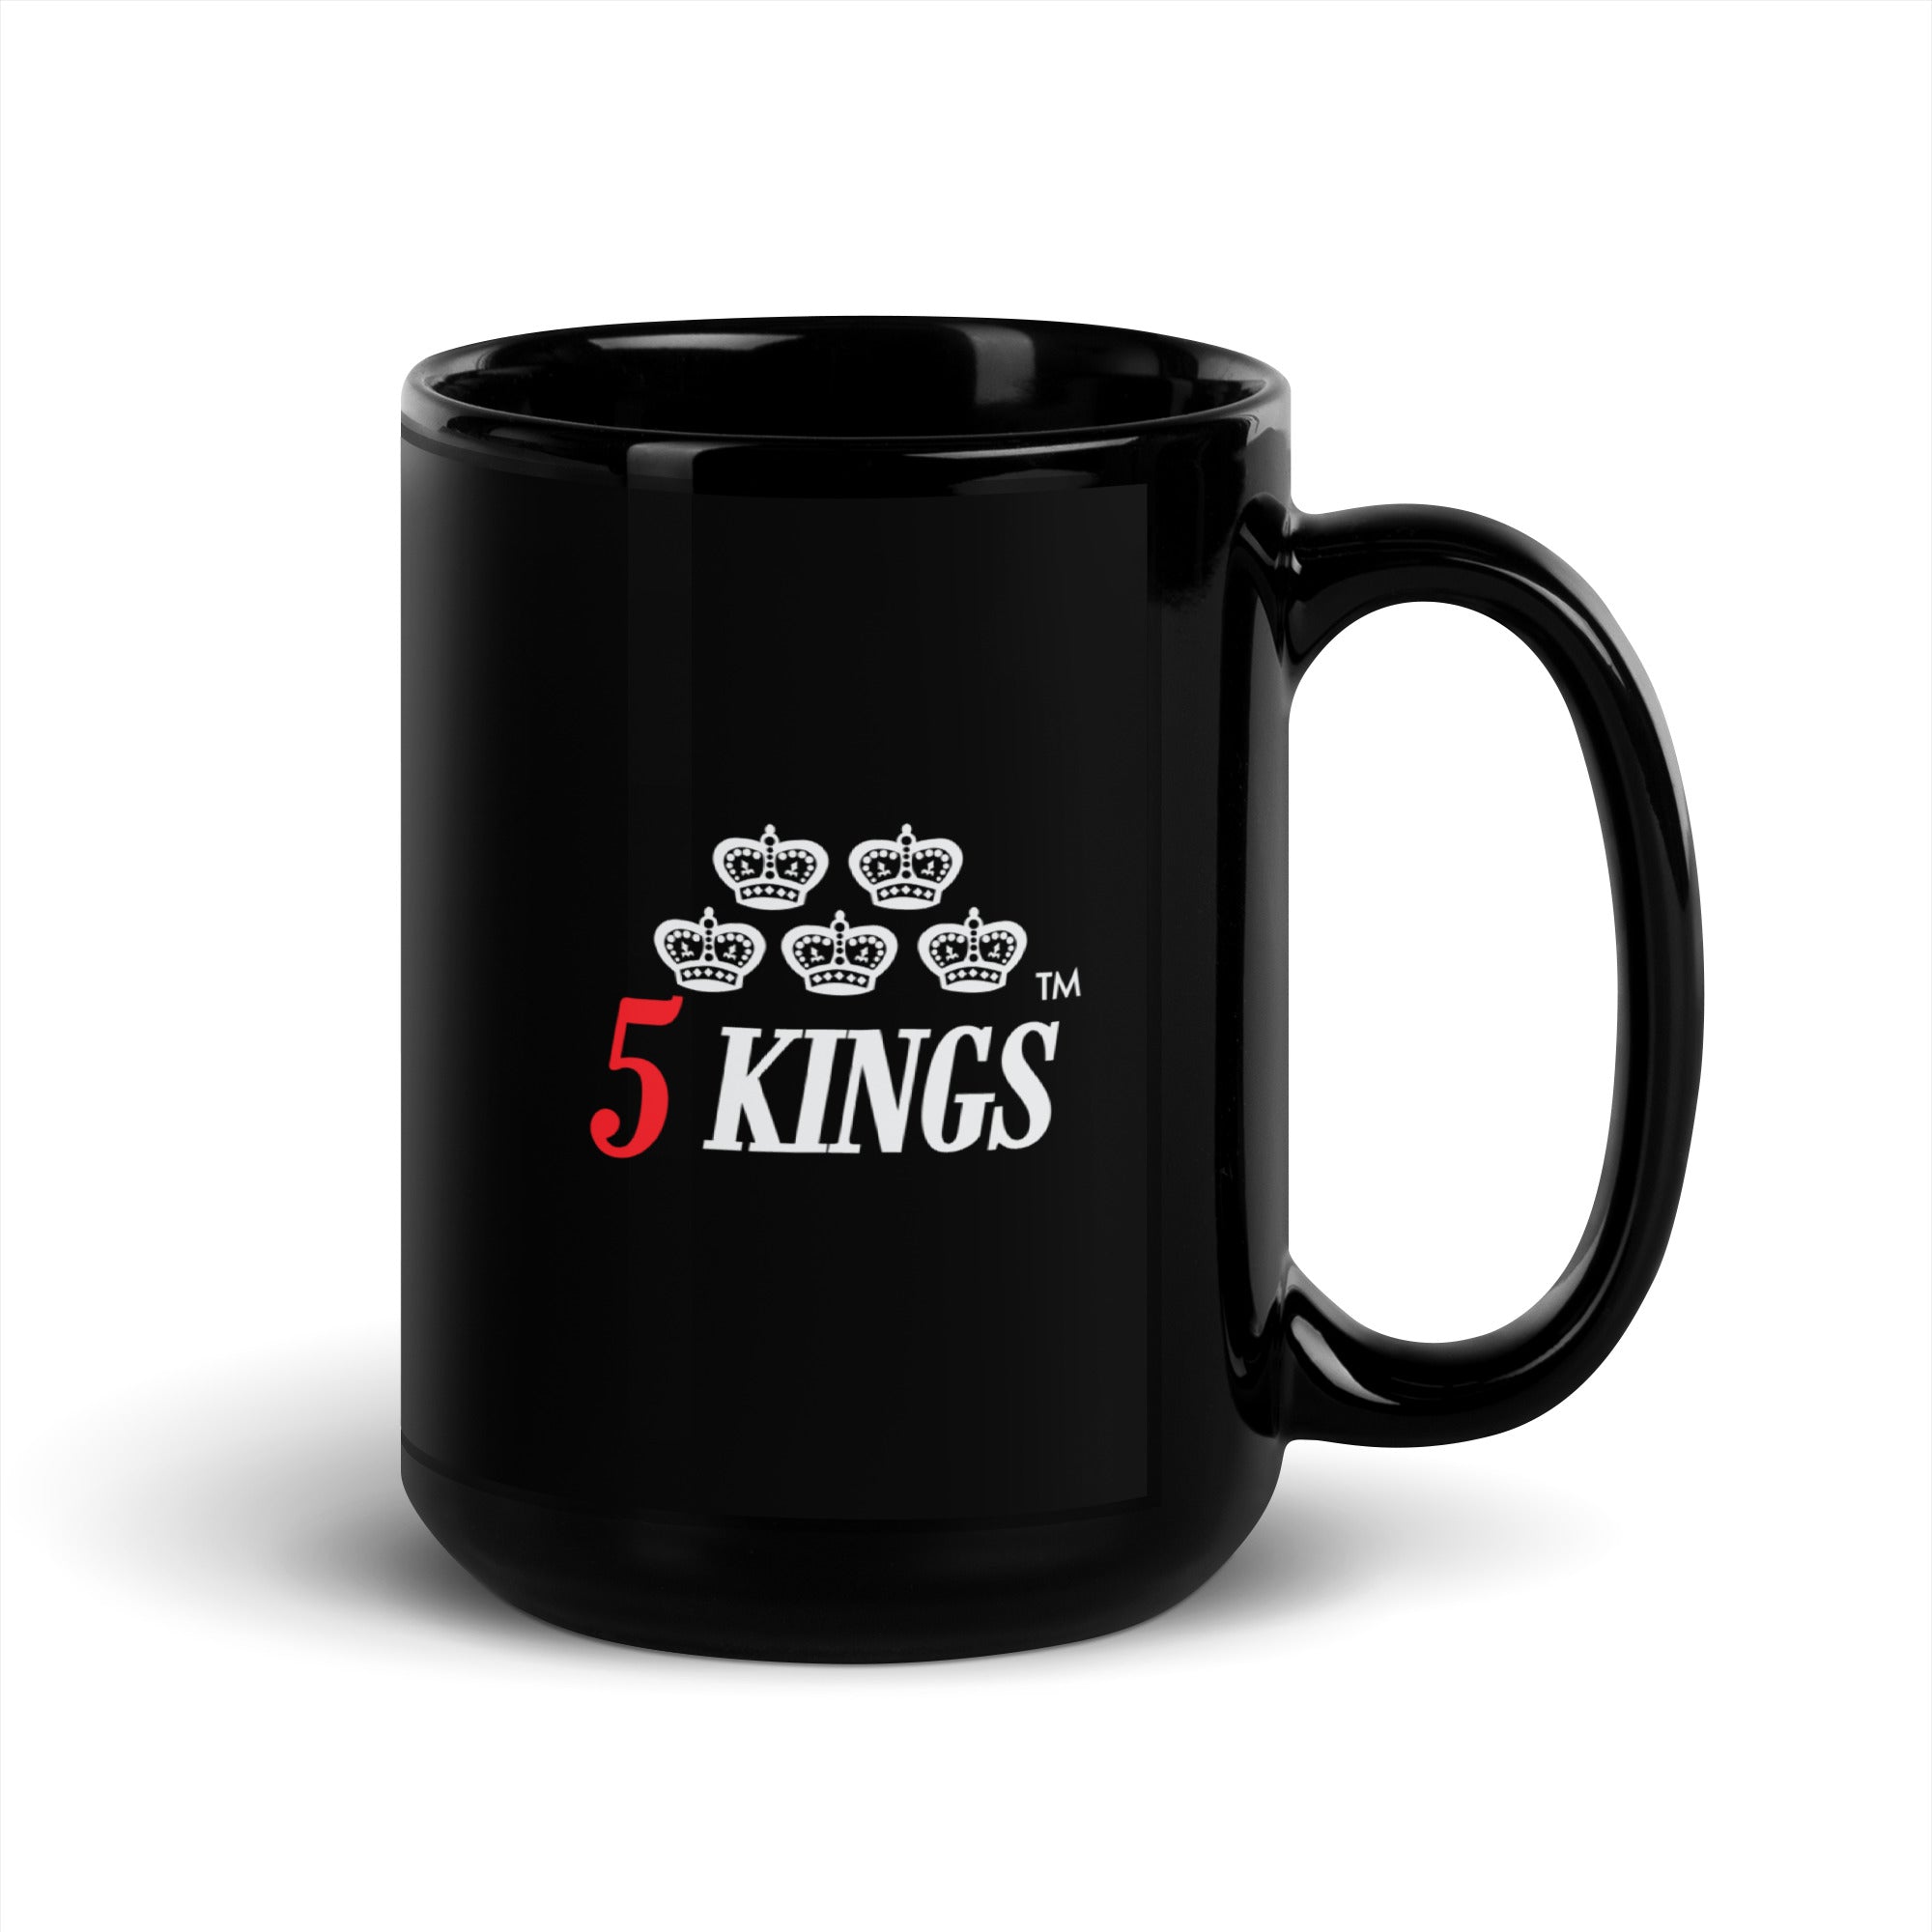 5 KINGS Mug